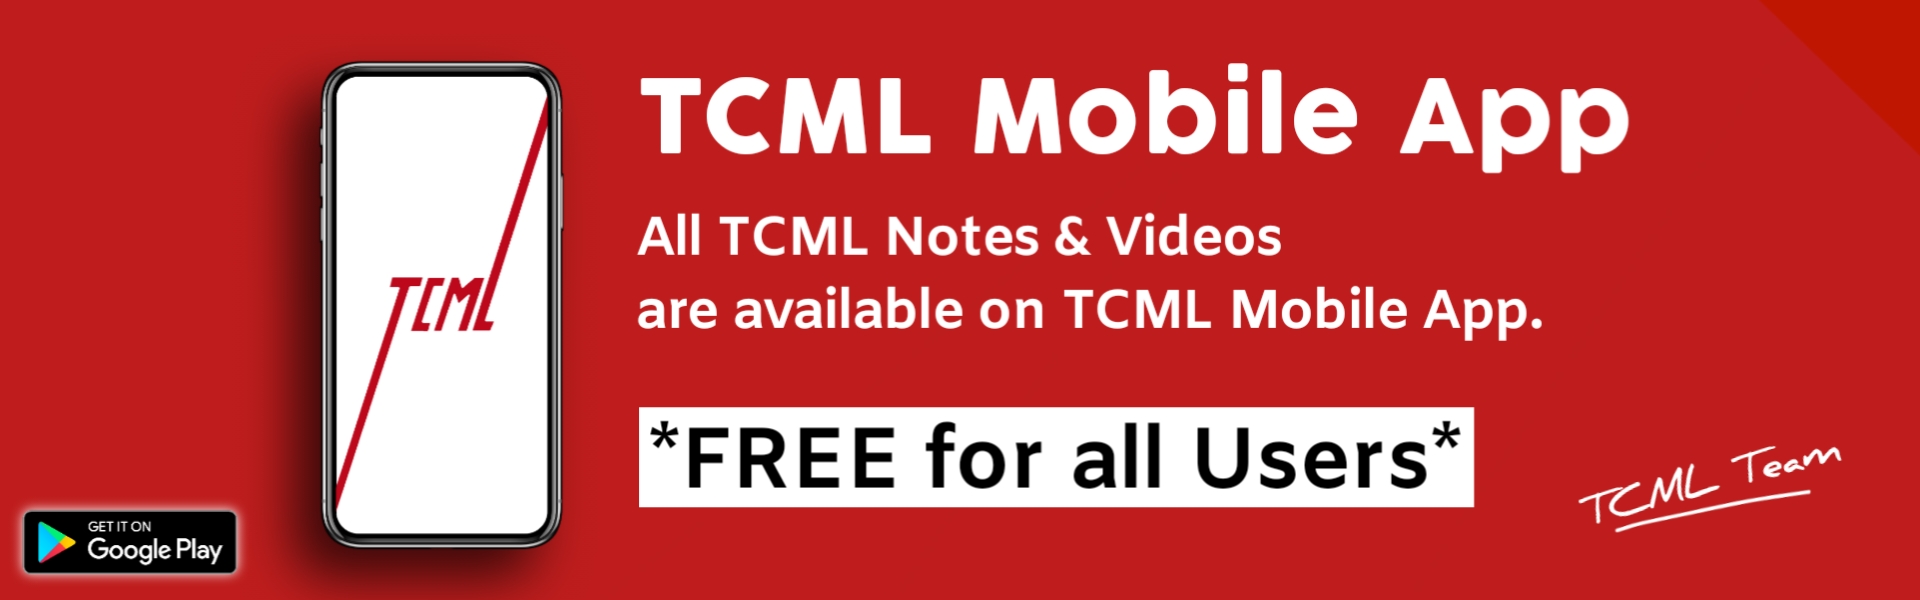 TCML Mobile App